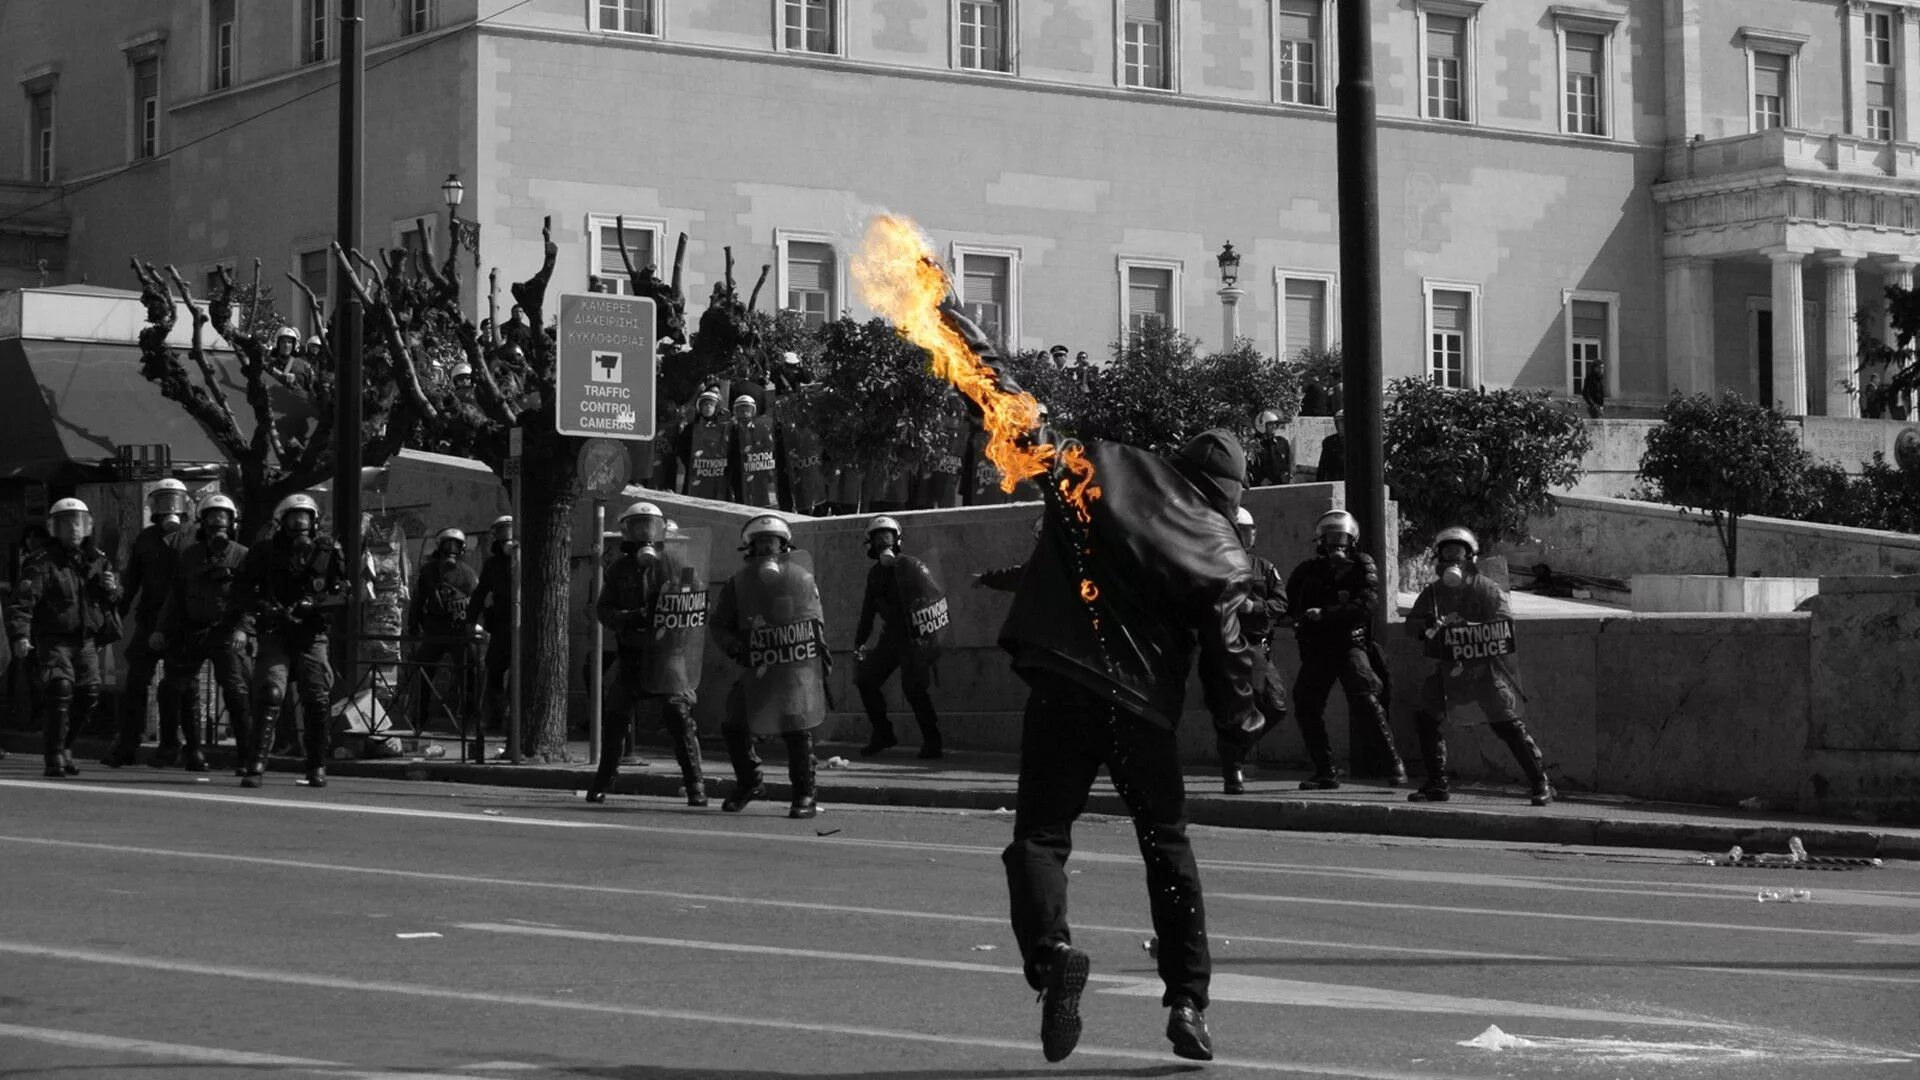 Анархист с коктейлем Молотова. Огонь революции. Анархисты против полиции. Уличный митинг